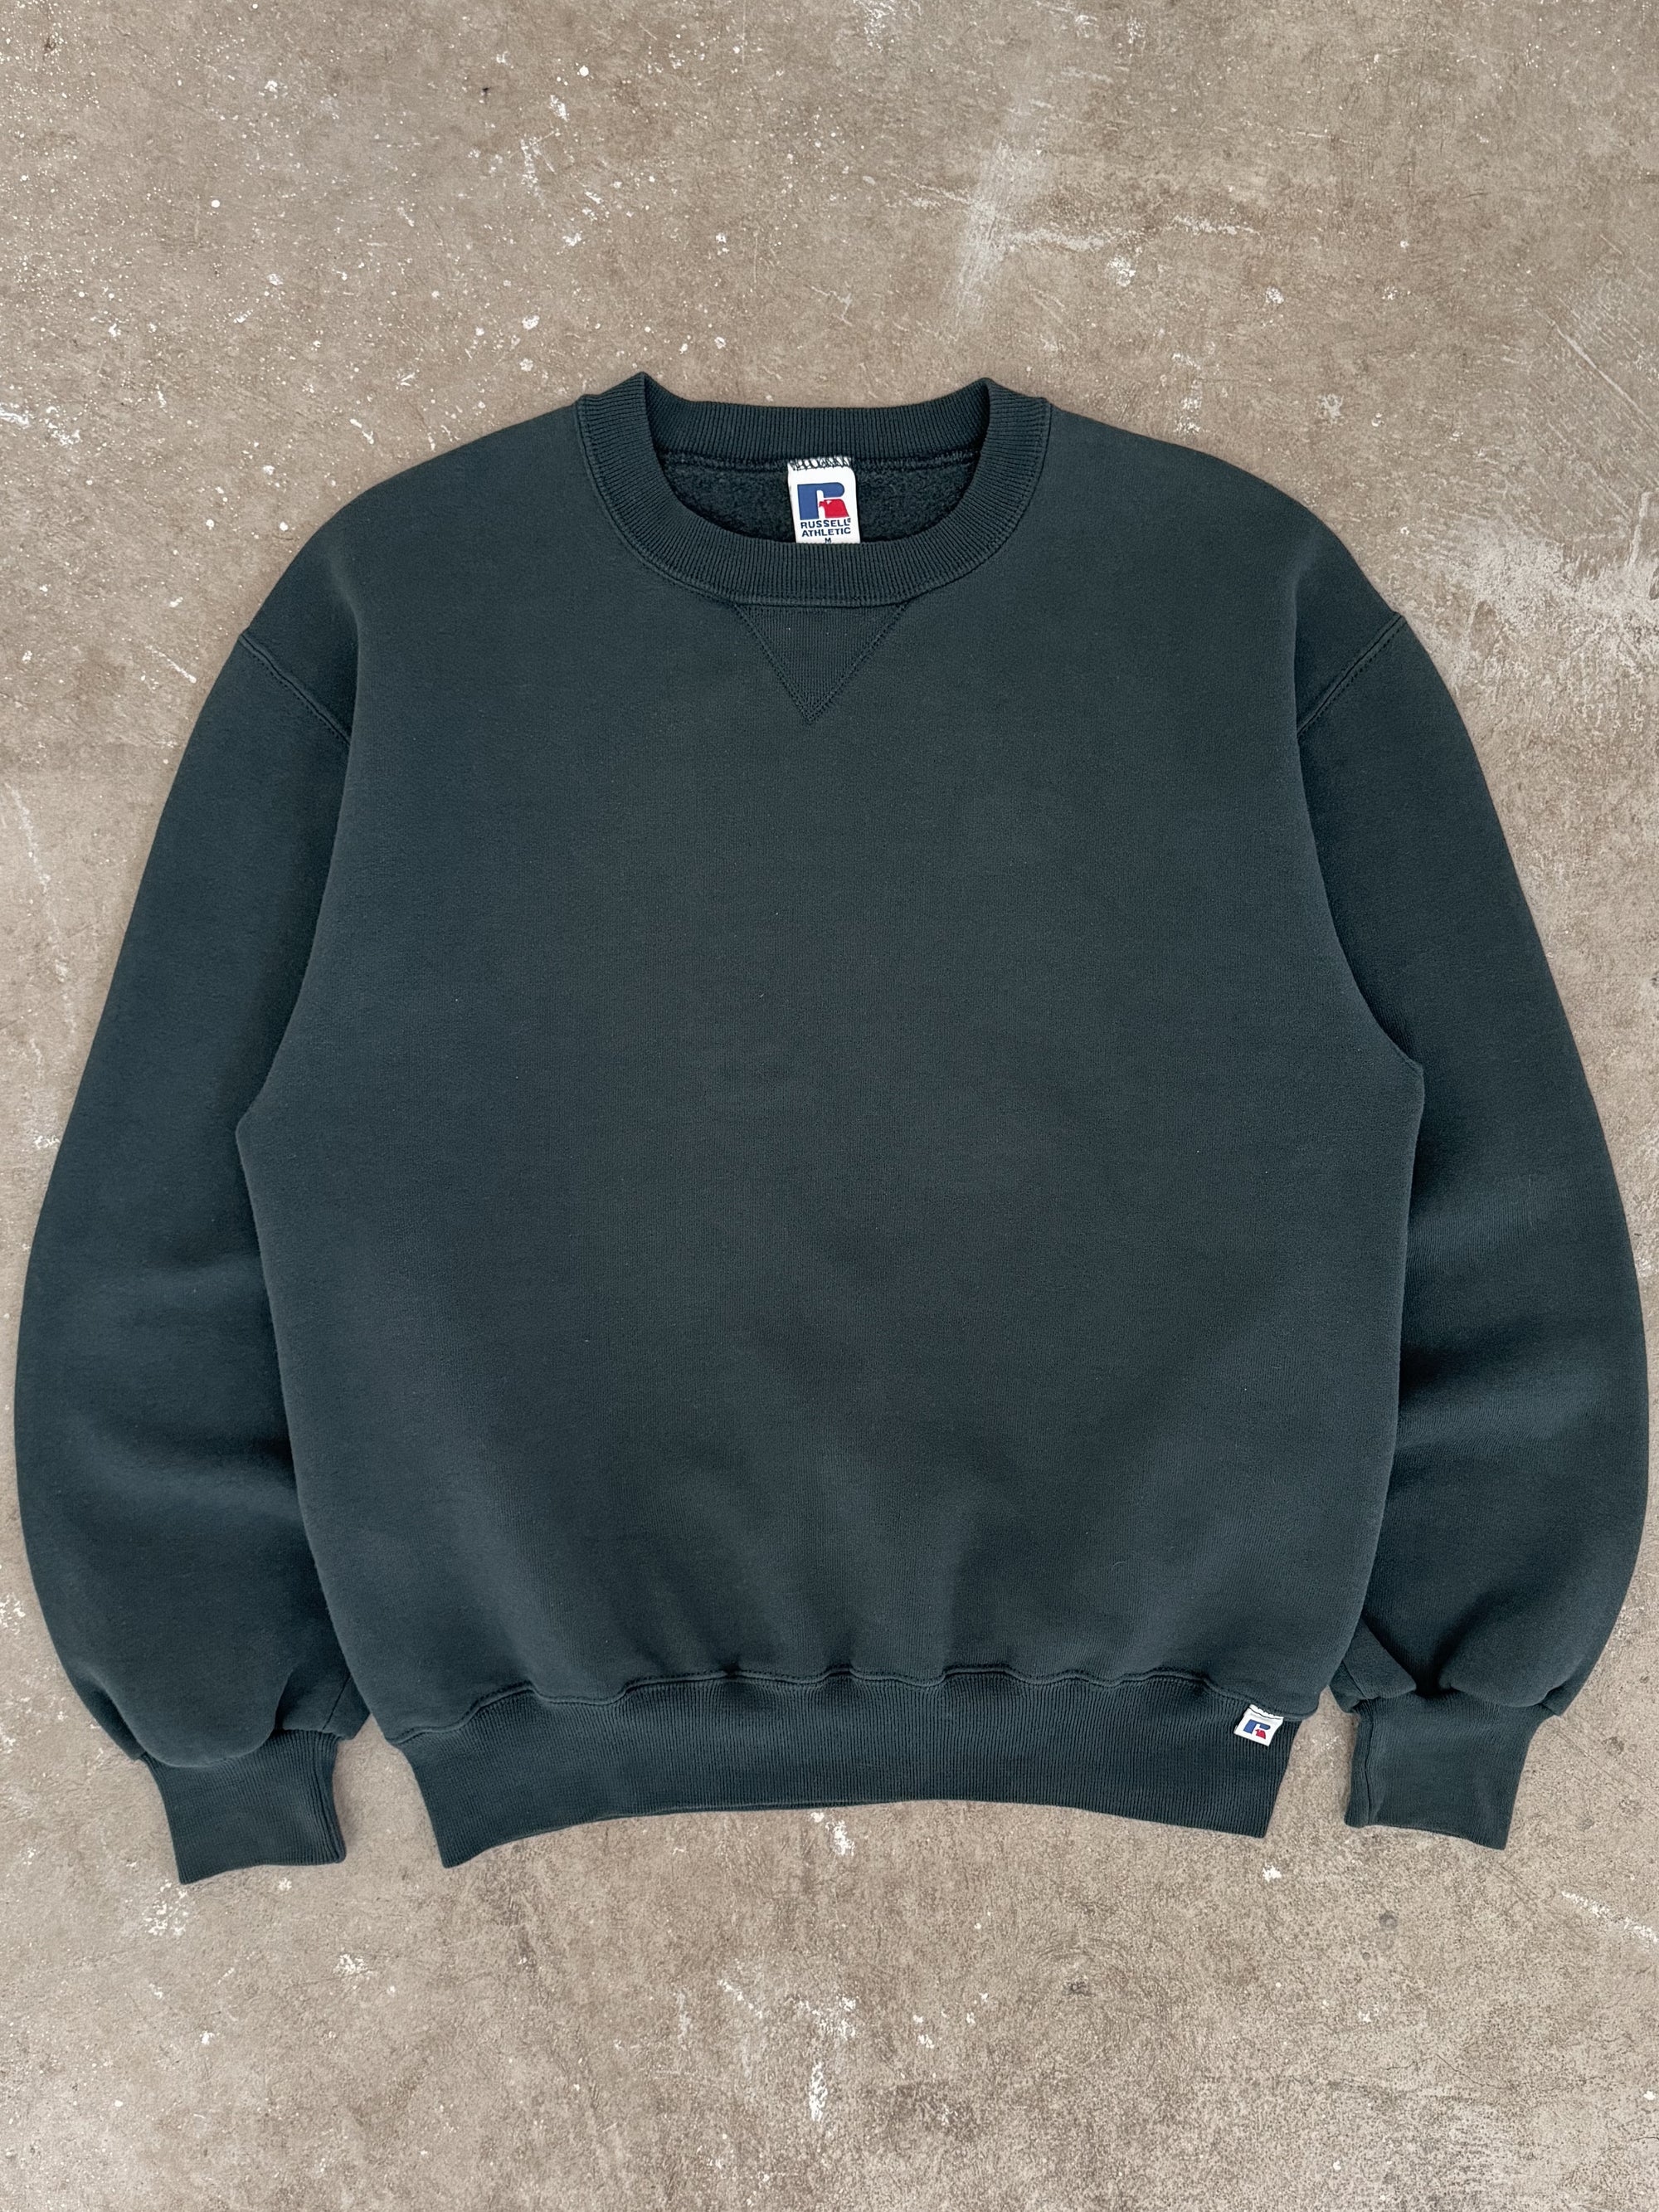 1990s Russell Sea Foam Sweatshirt (M)